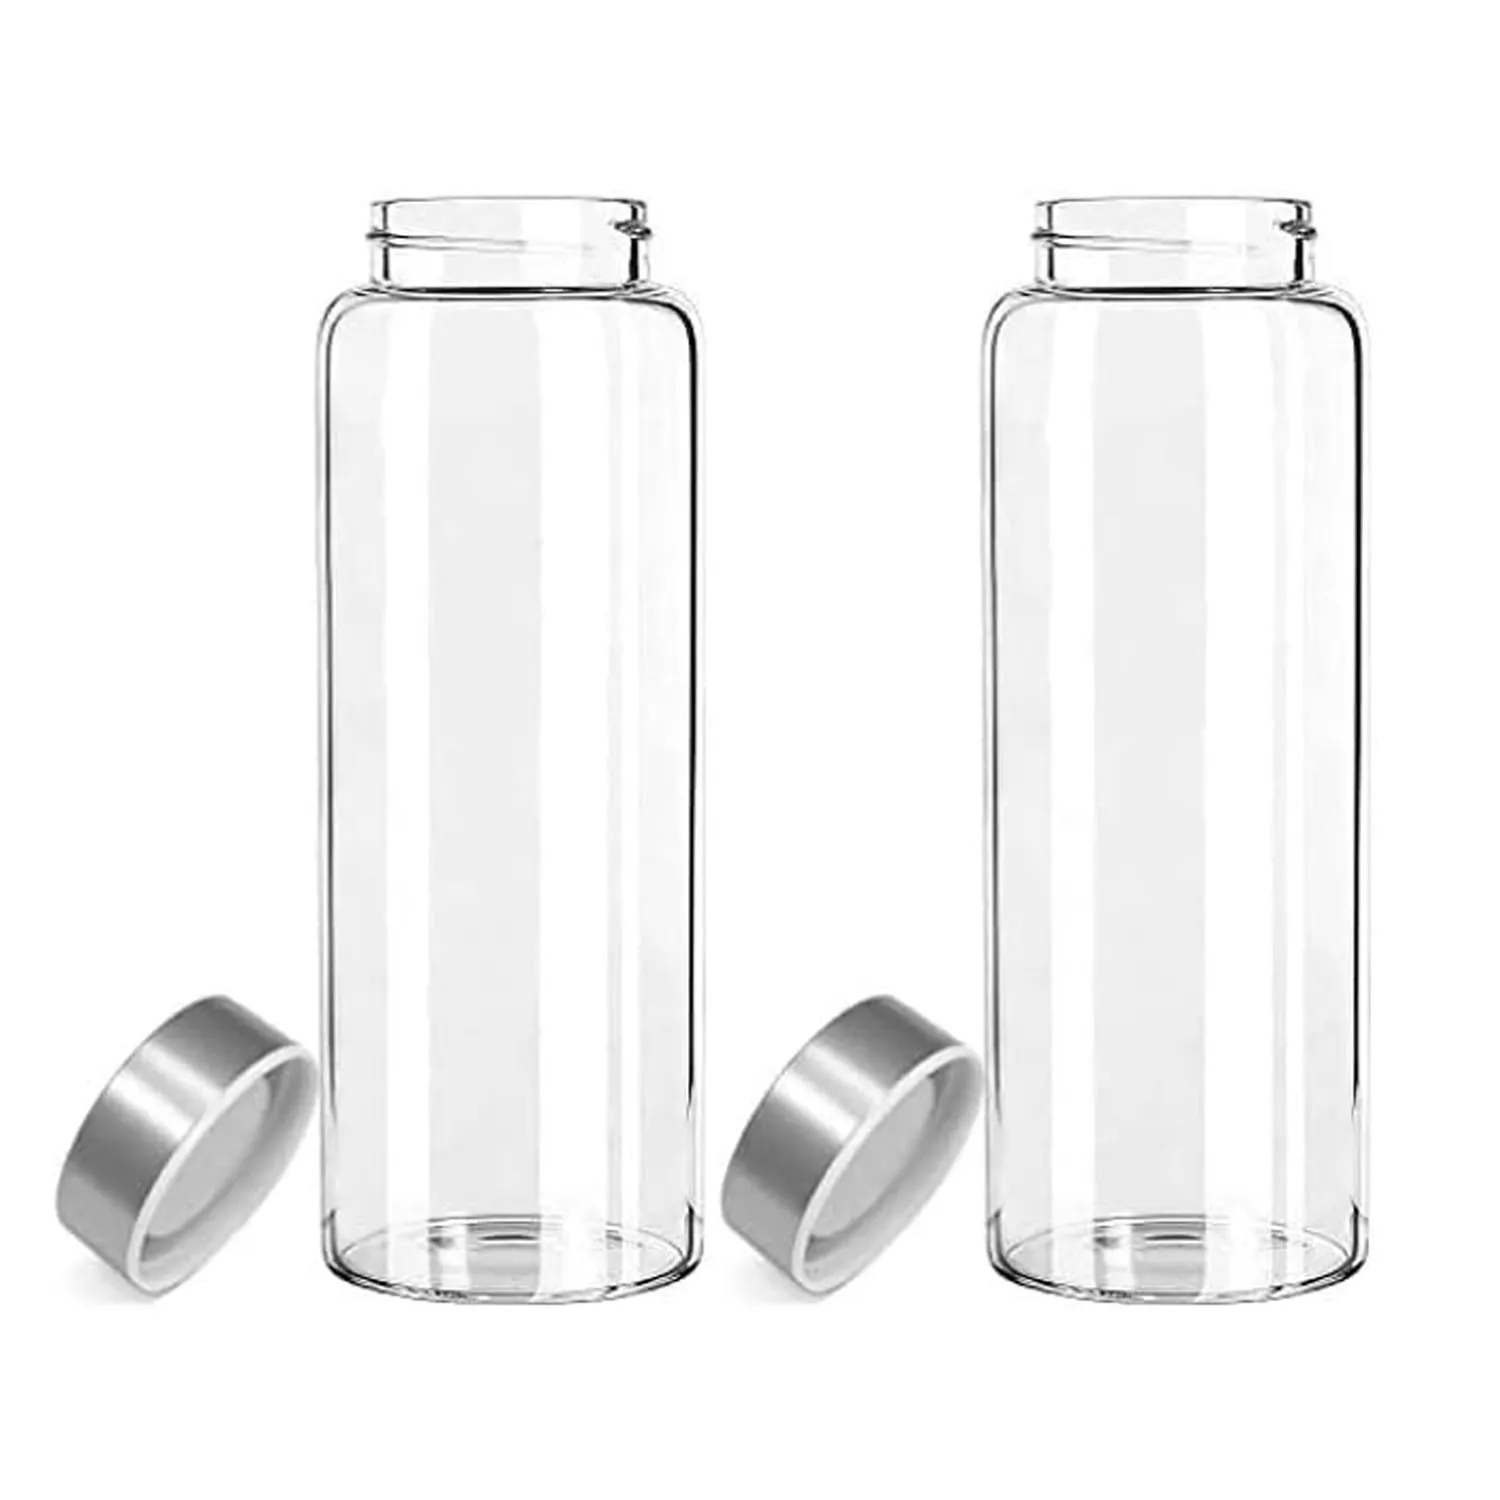 Sızdırmaz paslanmaz çelik kapaklı cam su/içecek şişeleri, tekrar kullanılabilir seyahat suyu şişeleri/içecek için Drinkware, 16o